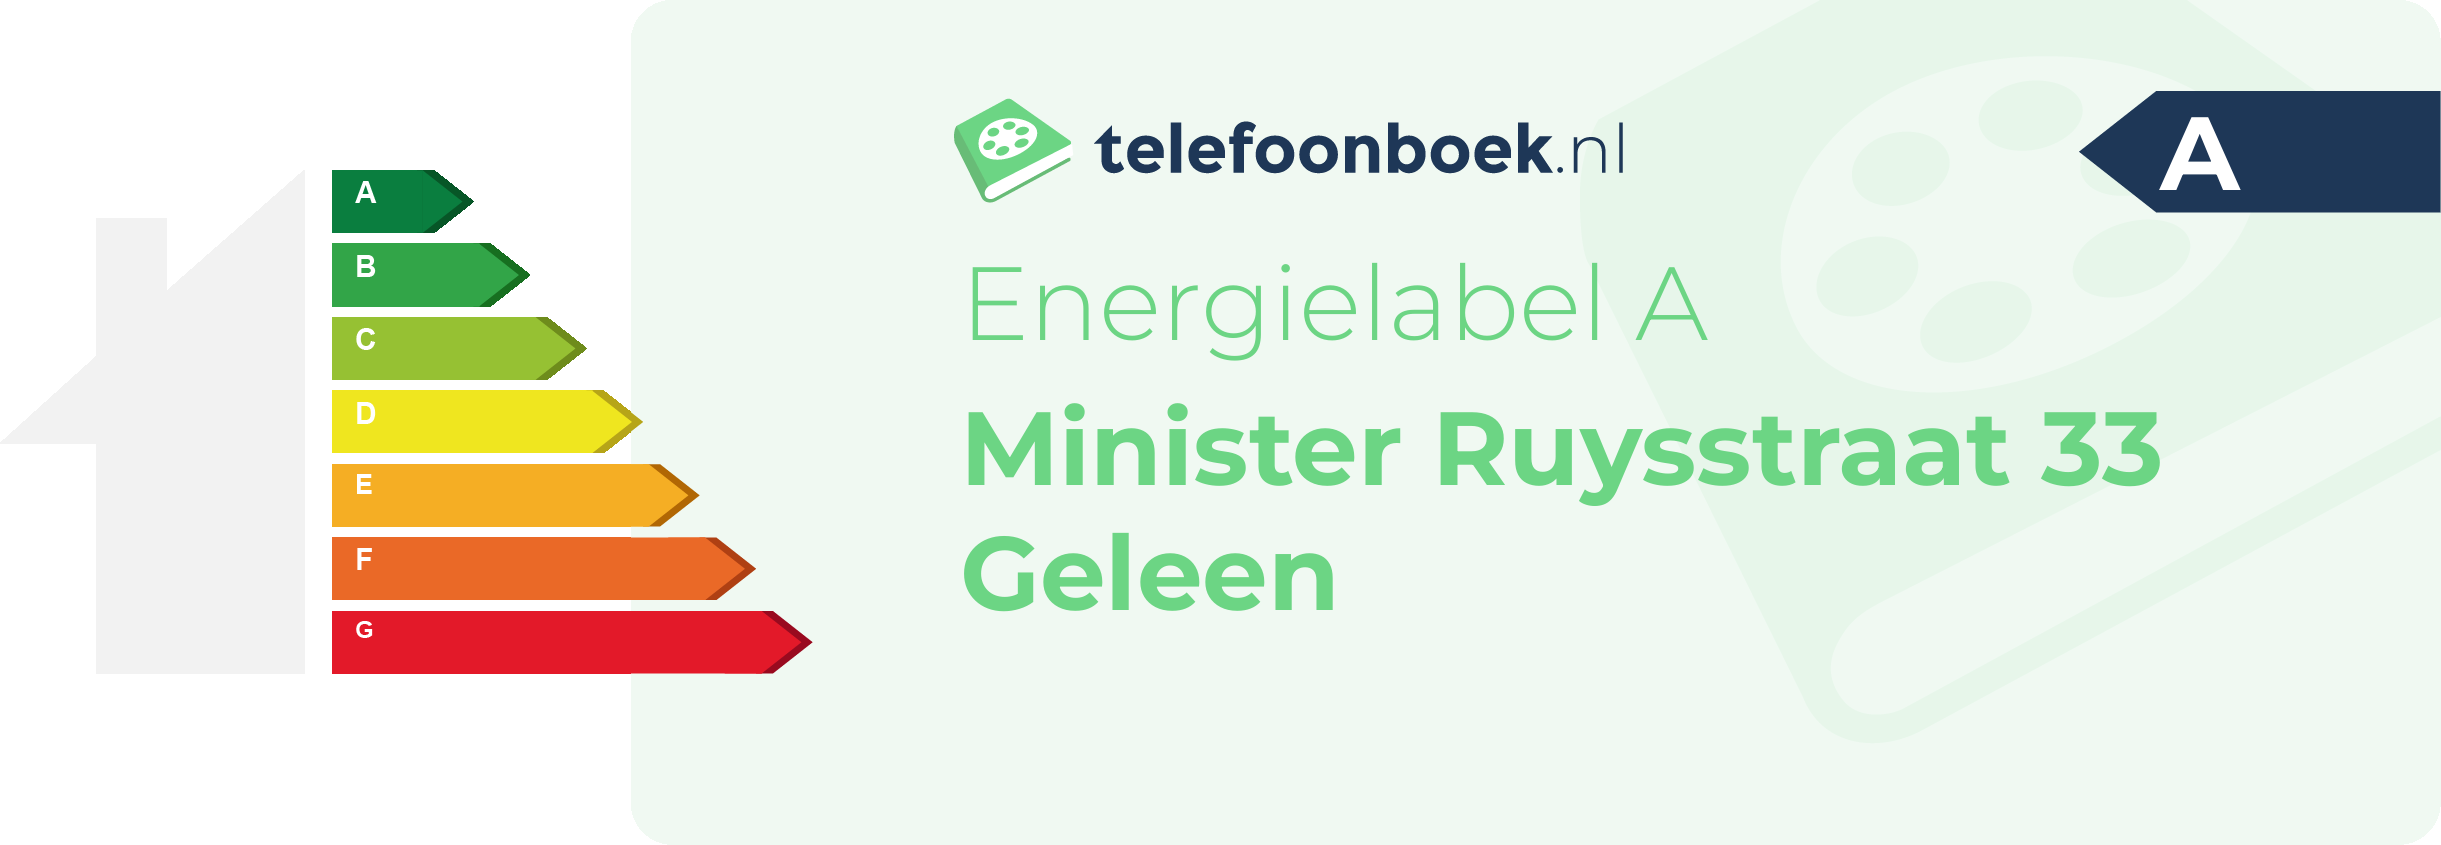 Energielabel Minister Ruysstraat 33 Geleen